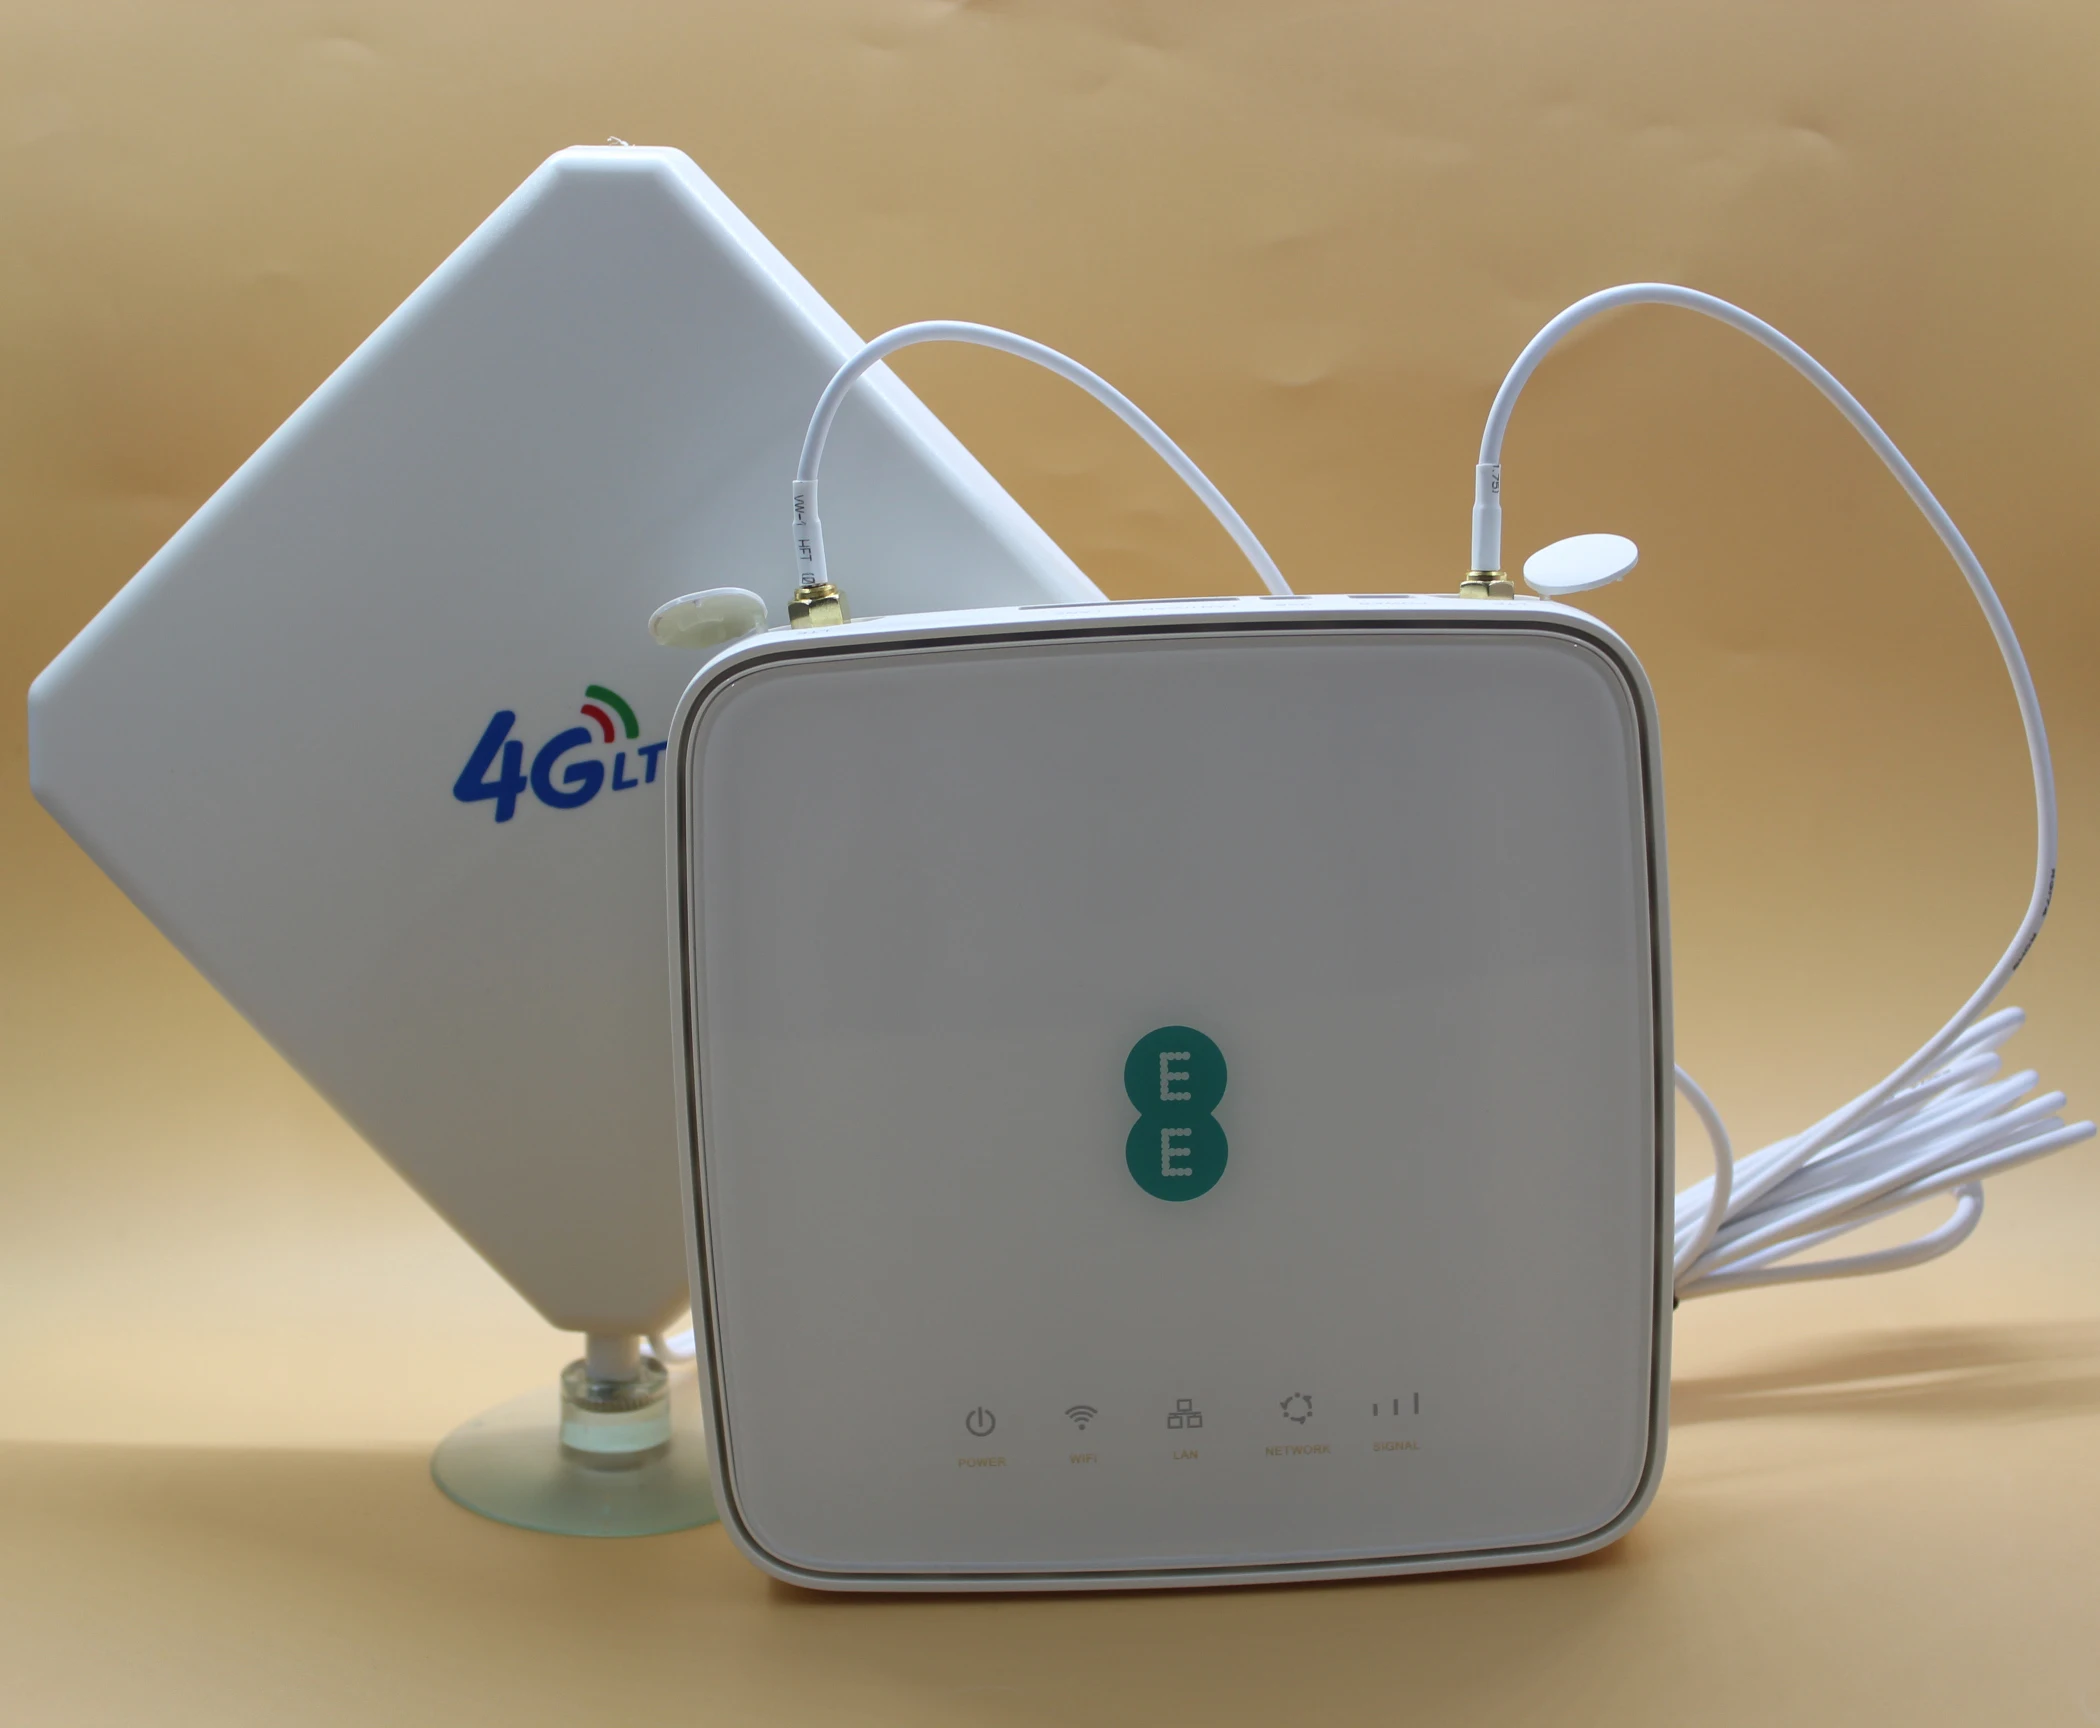 Разблокированный роутер Alcatel 4G EE HH70VB с антенной 4G LTE Cube WiFi маршрутизатор с точкой доступа Домашний Беспроводной роутер со слотом для sim-карты